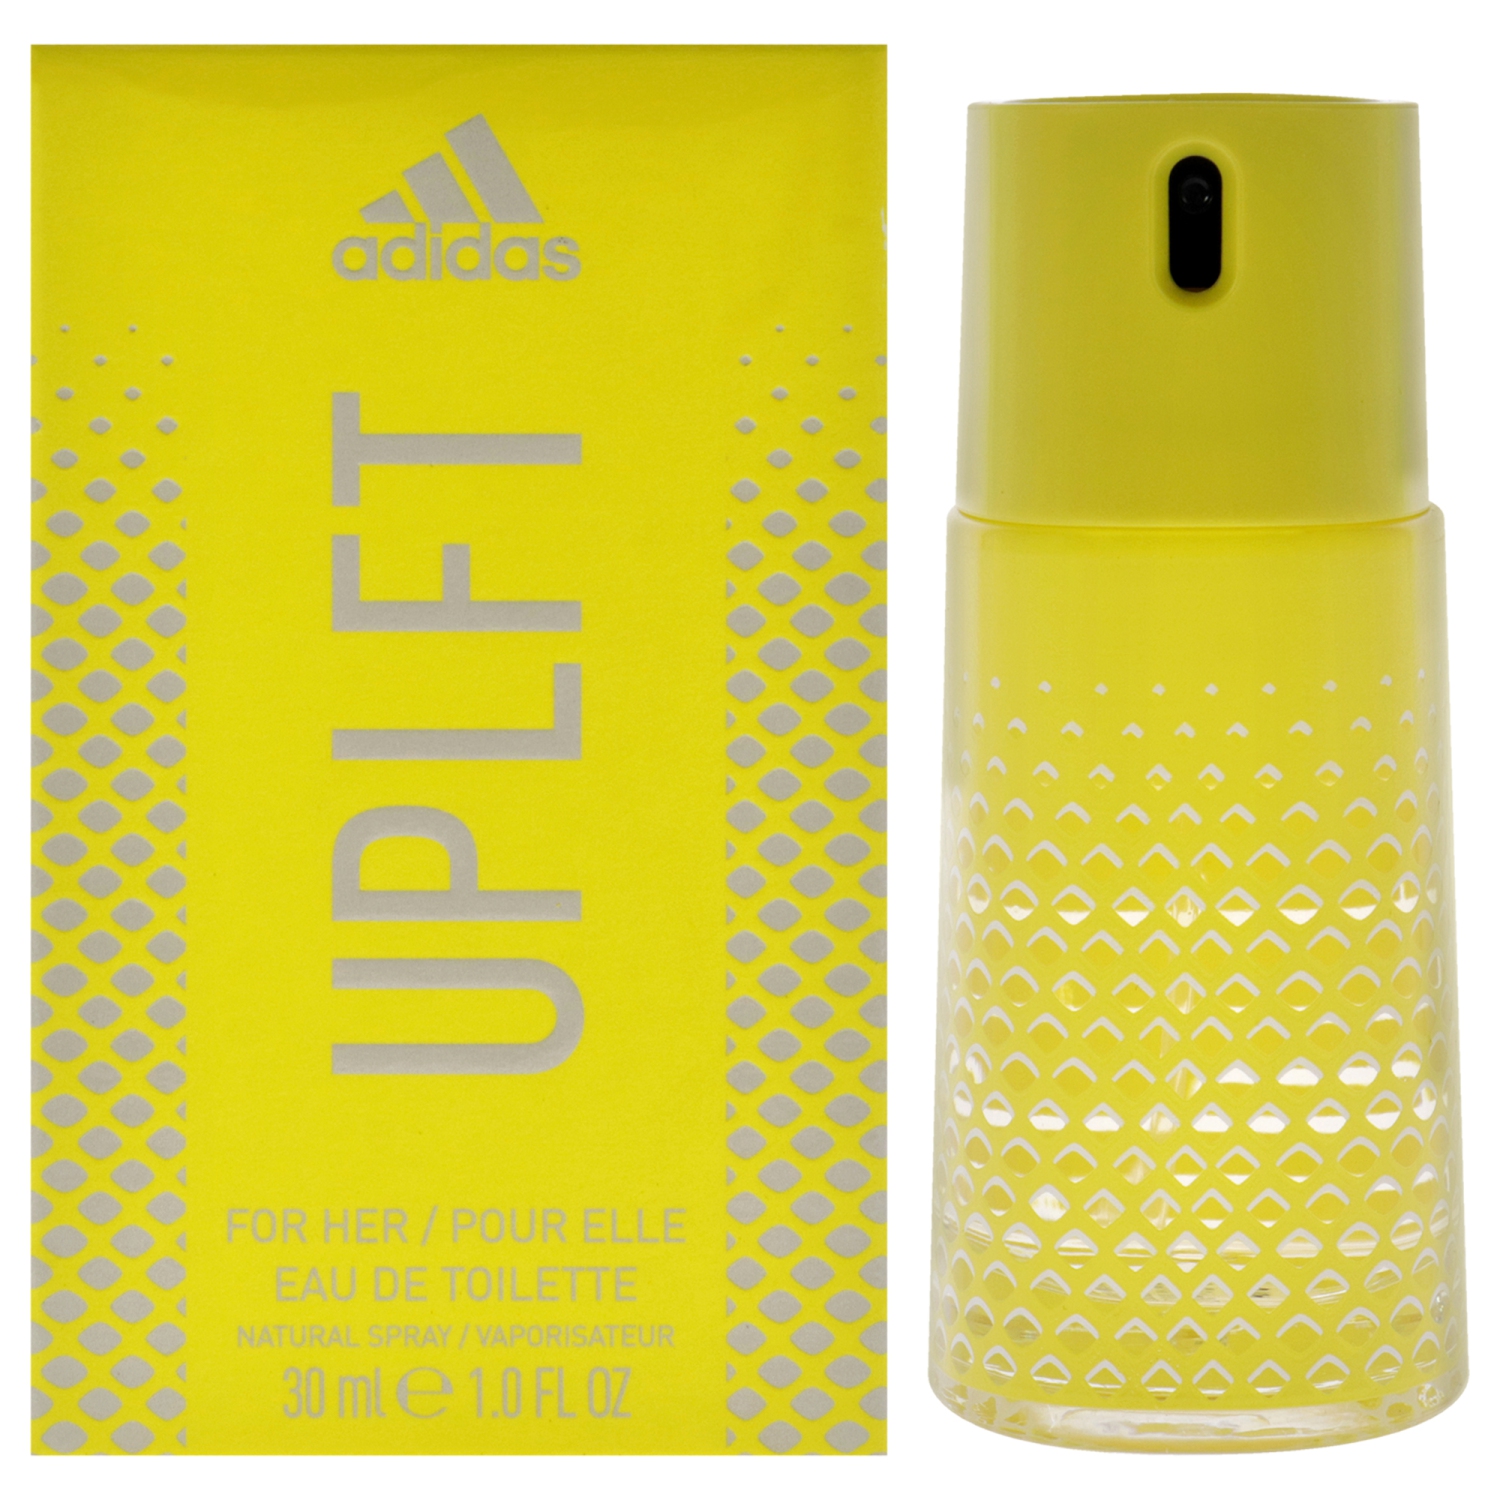 UPLFT by Adidas for Women - 1 oz EDT Spray